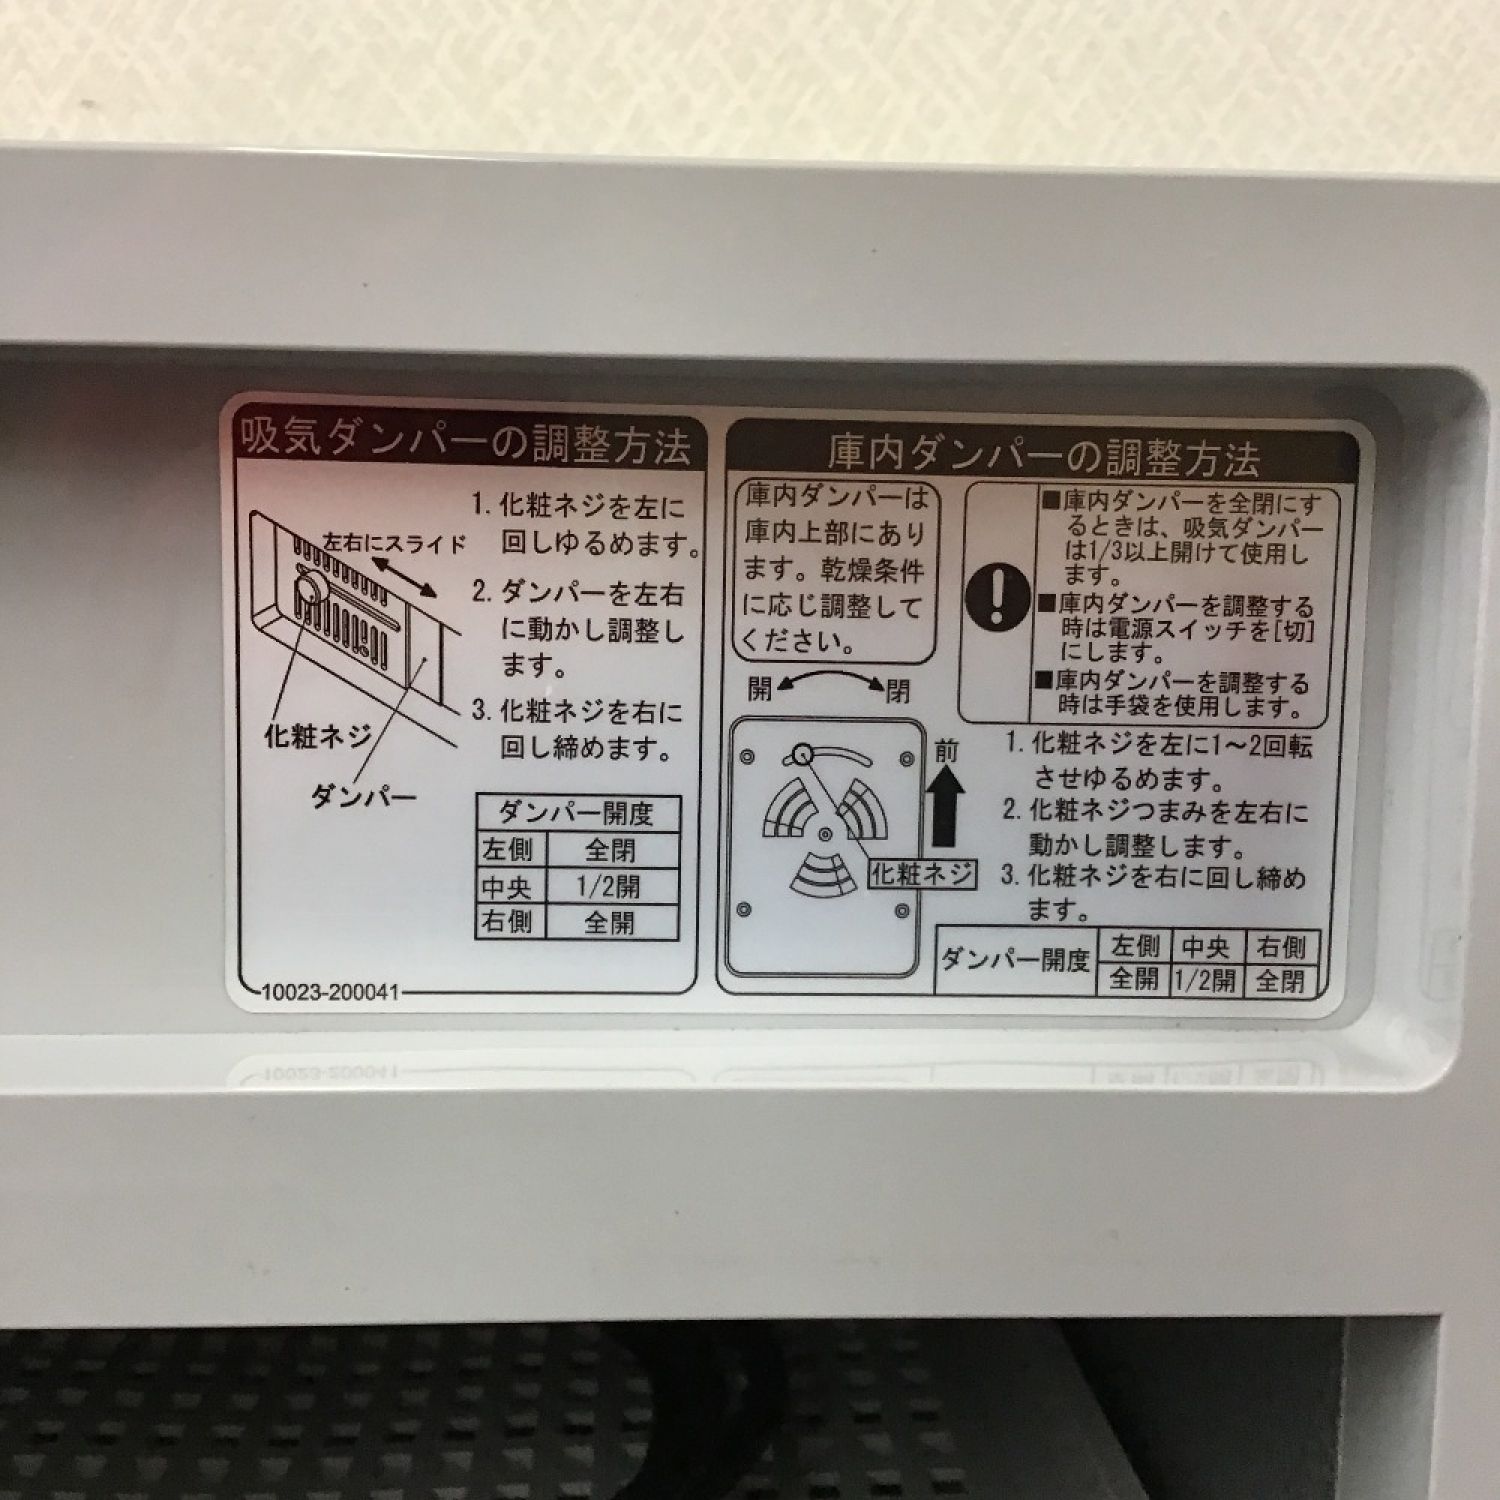 食品乾燥機 ドラッピー DSJ-mini